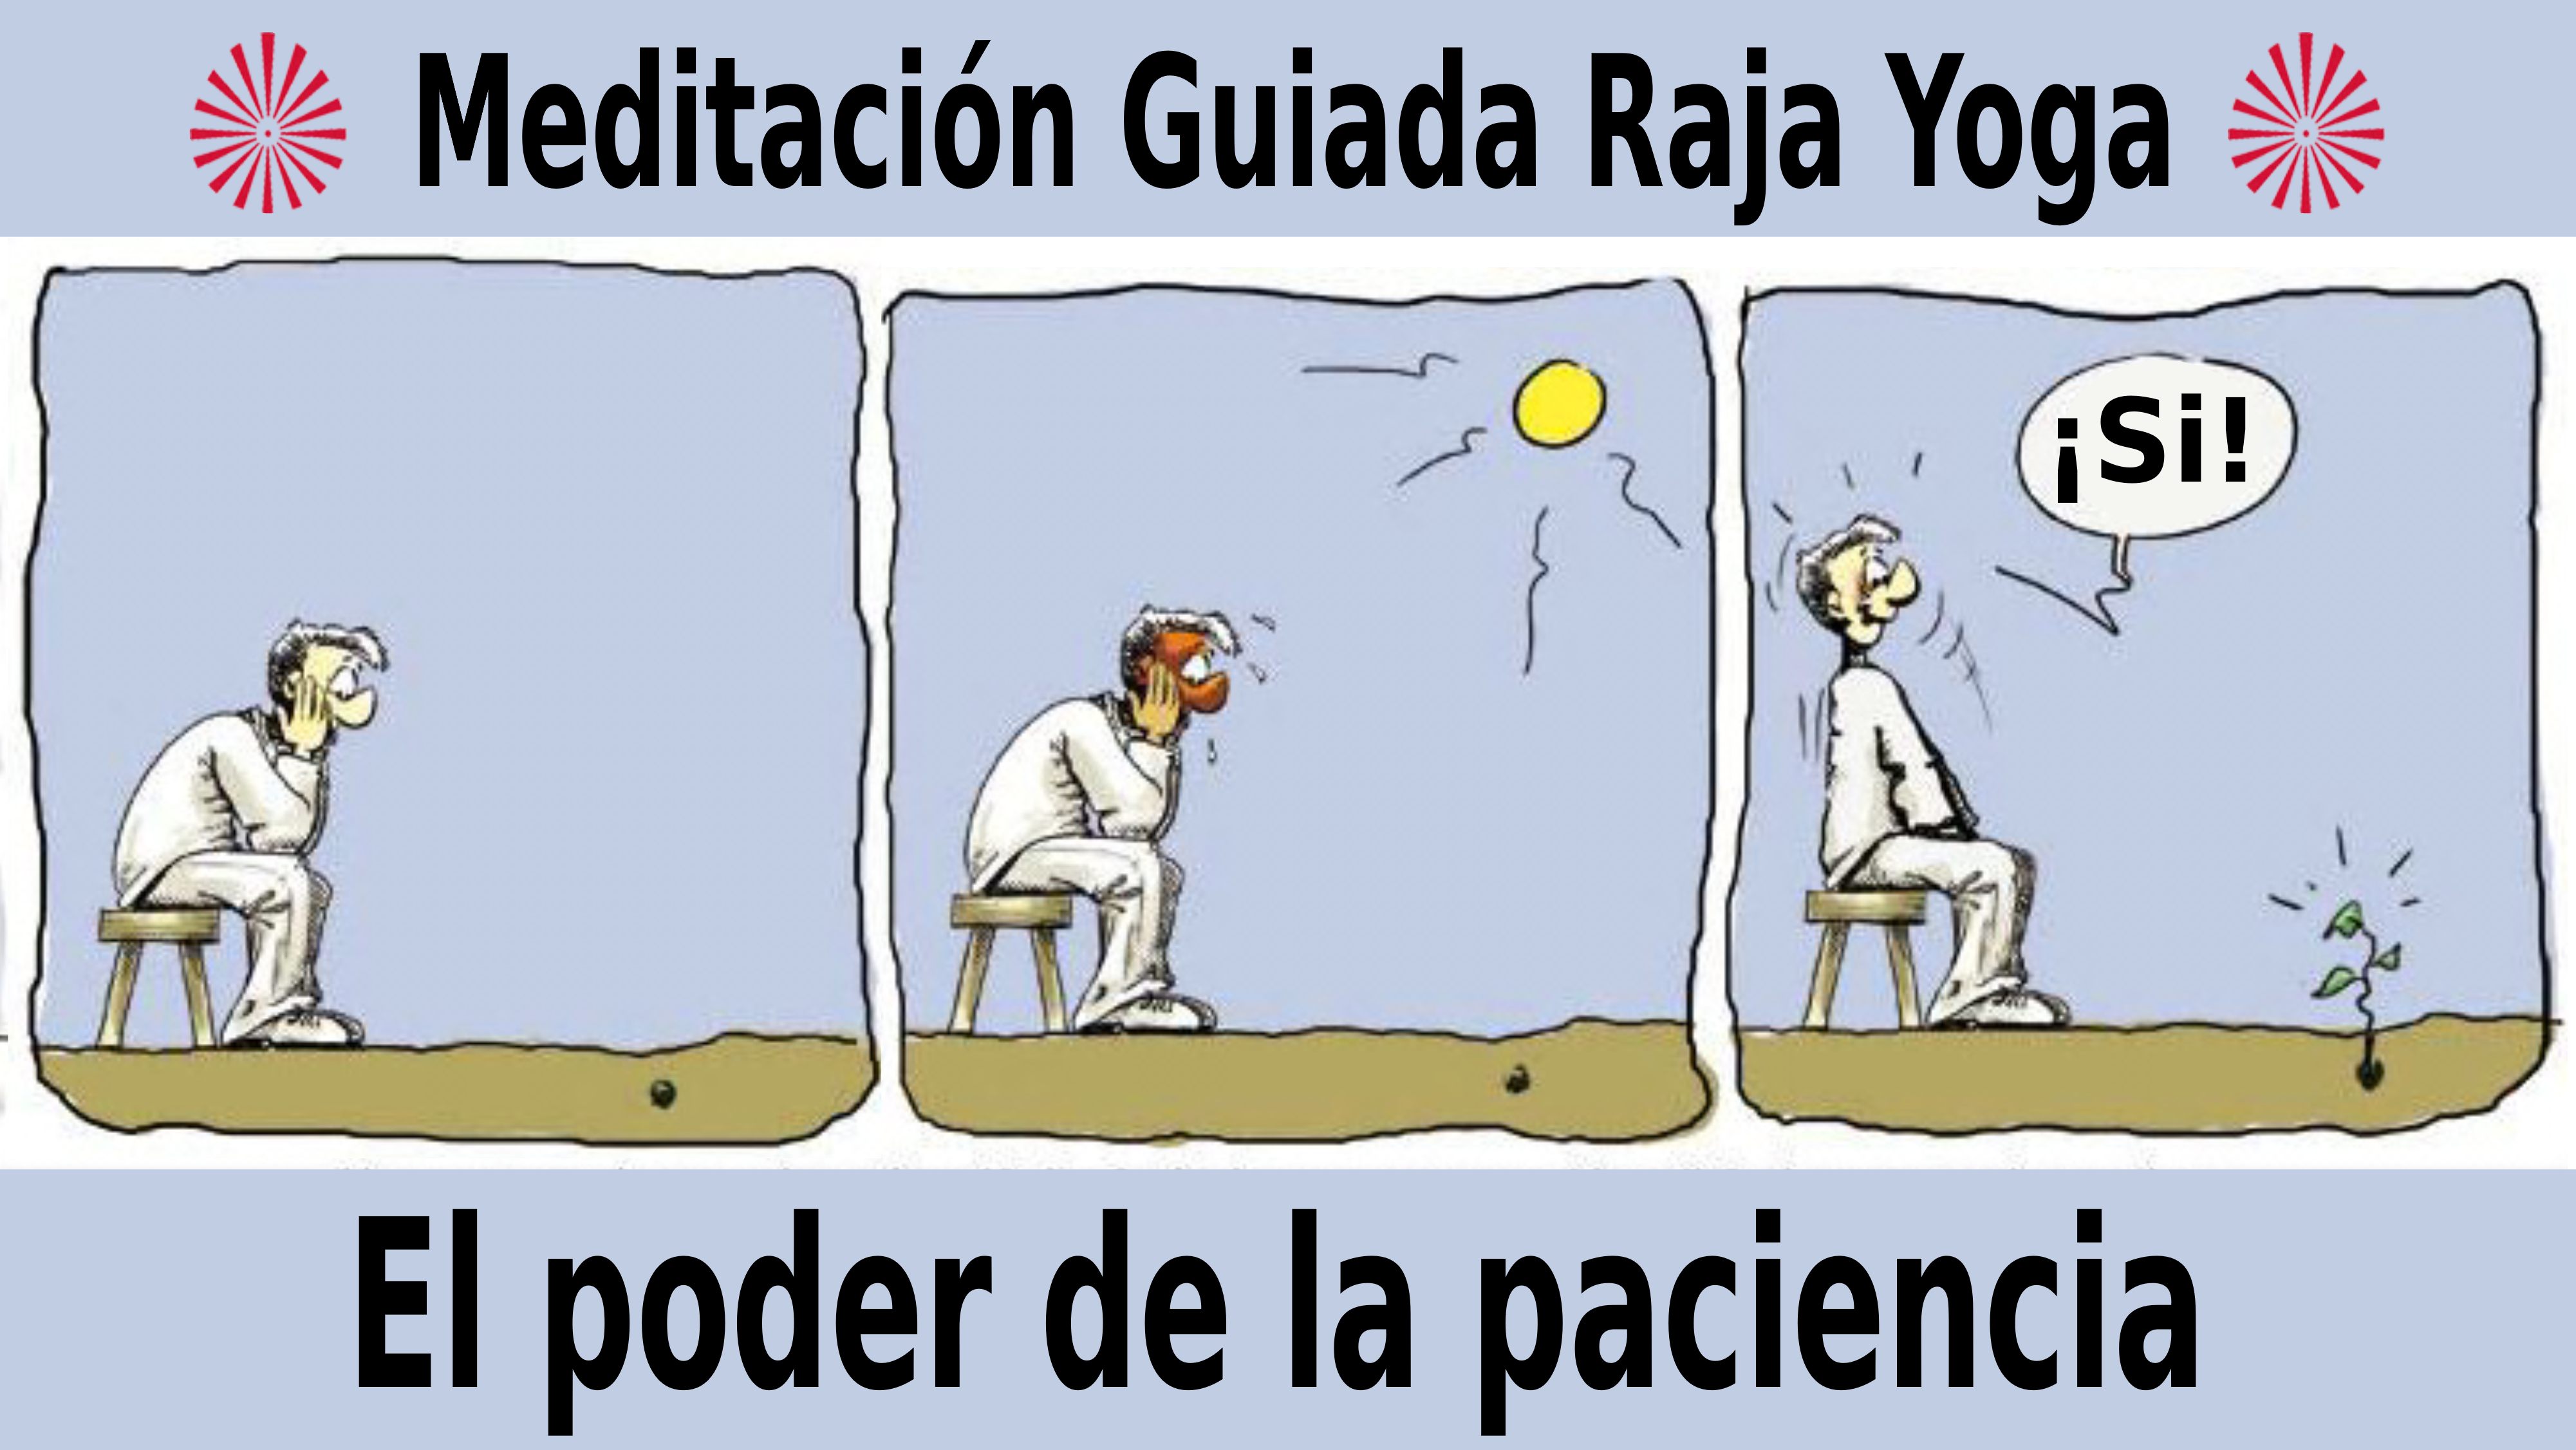 Meditación Raja Yoga: El poder de la paciencia (2 Noviembre 2020)  On-line desde Mallorca